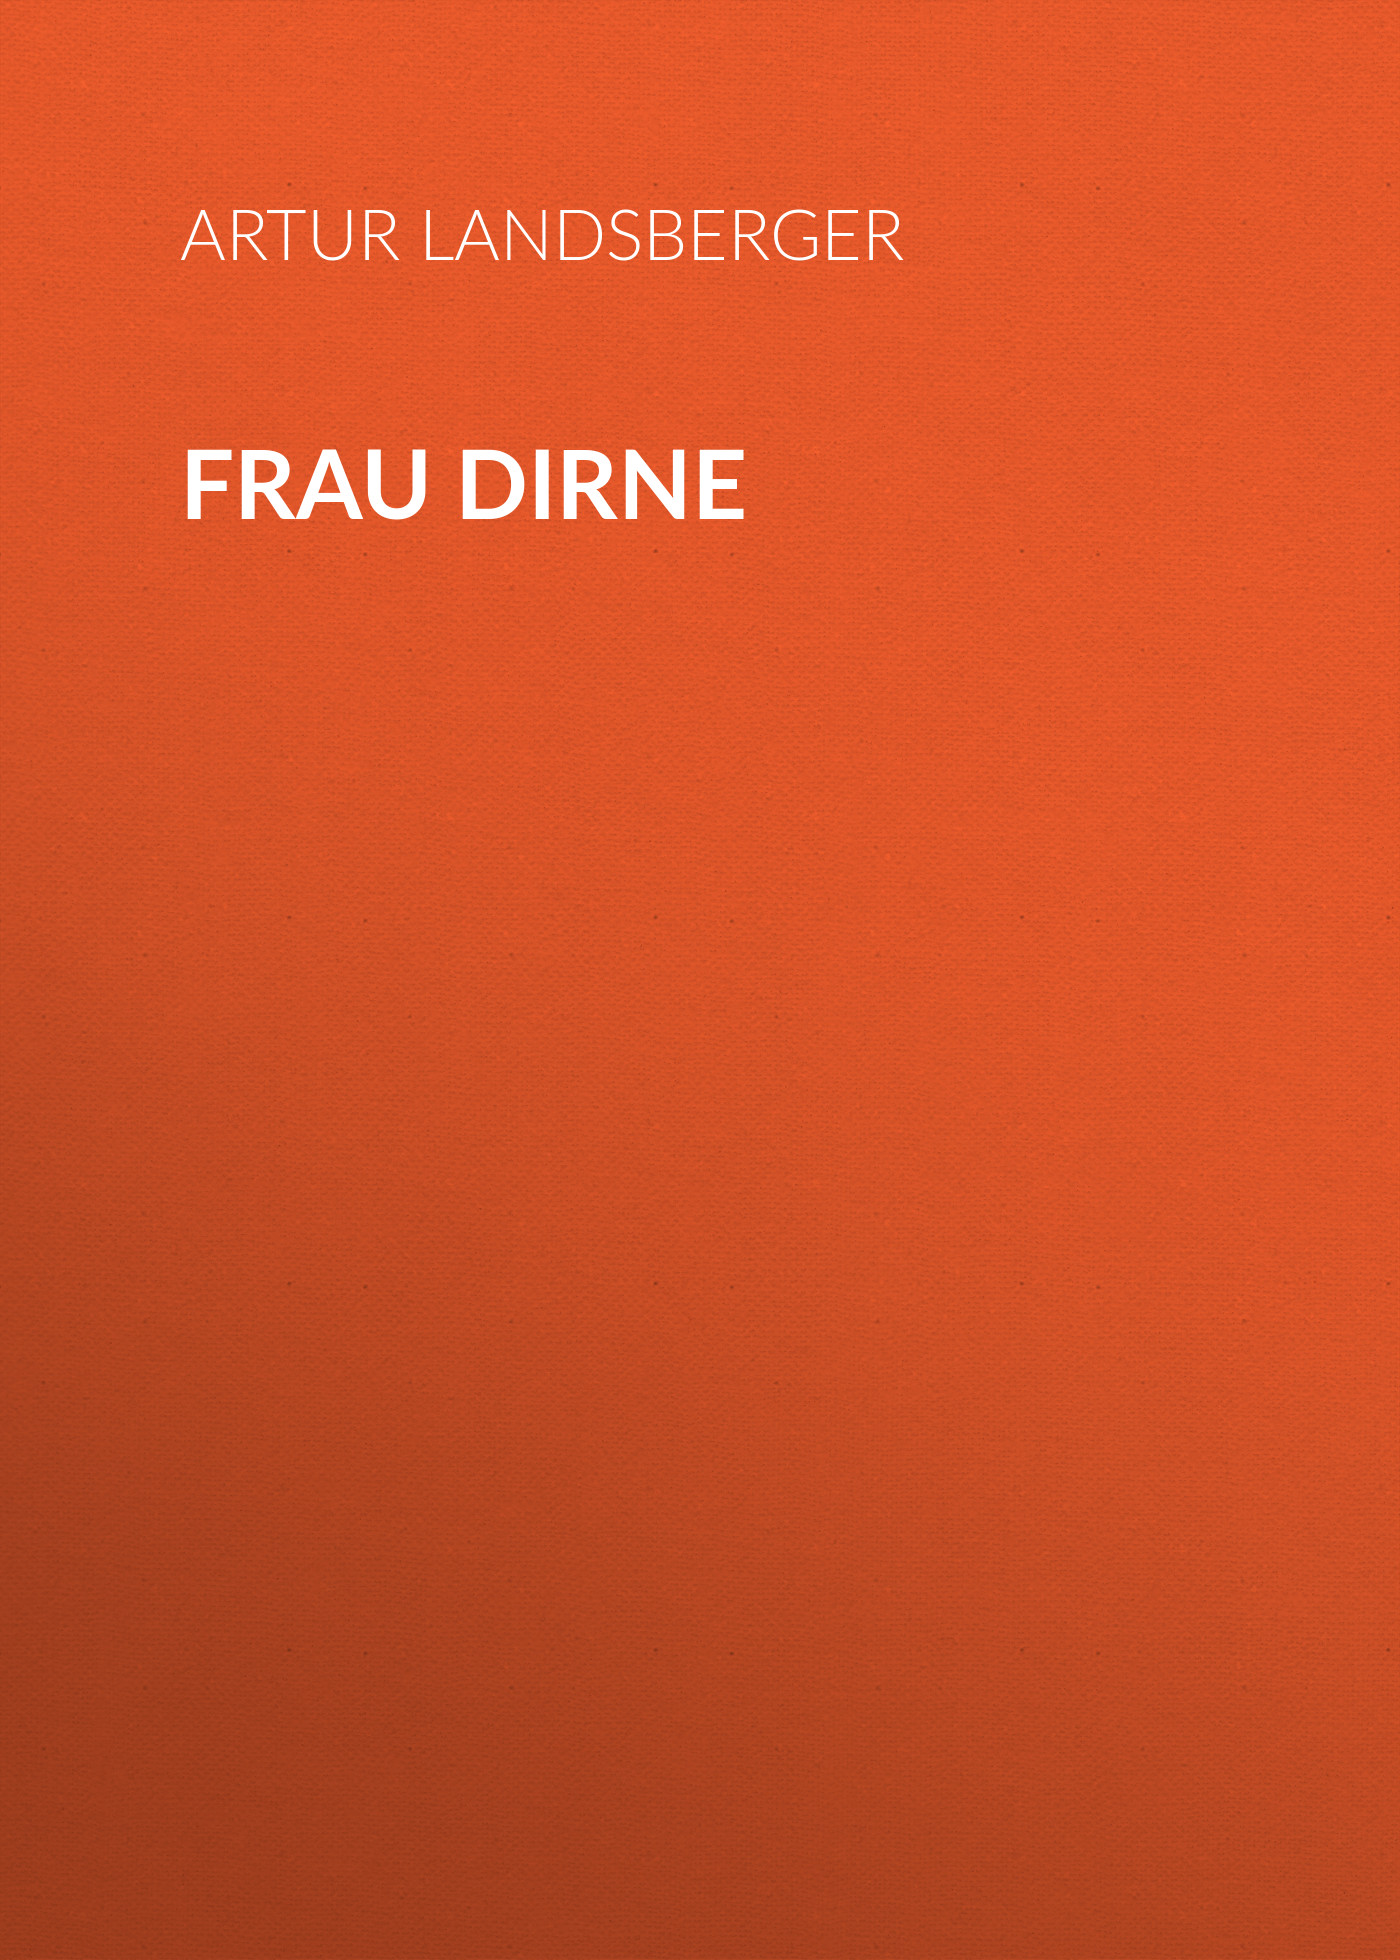 Книга Frau Dirne из серии , созданная Artur Landsberger, может относится к жанру Зарубежная классика. Стоимость электронной книги Frau Dirne с идентификатором 48632980 составляет 0 руб.